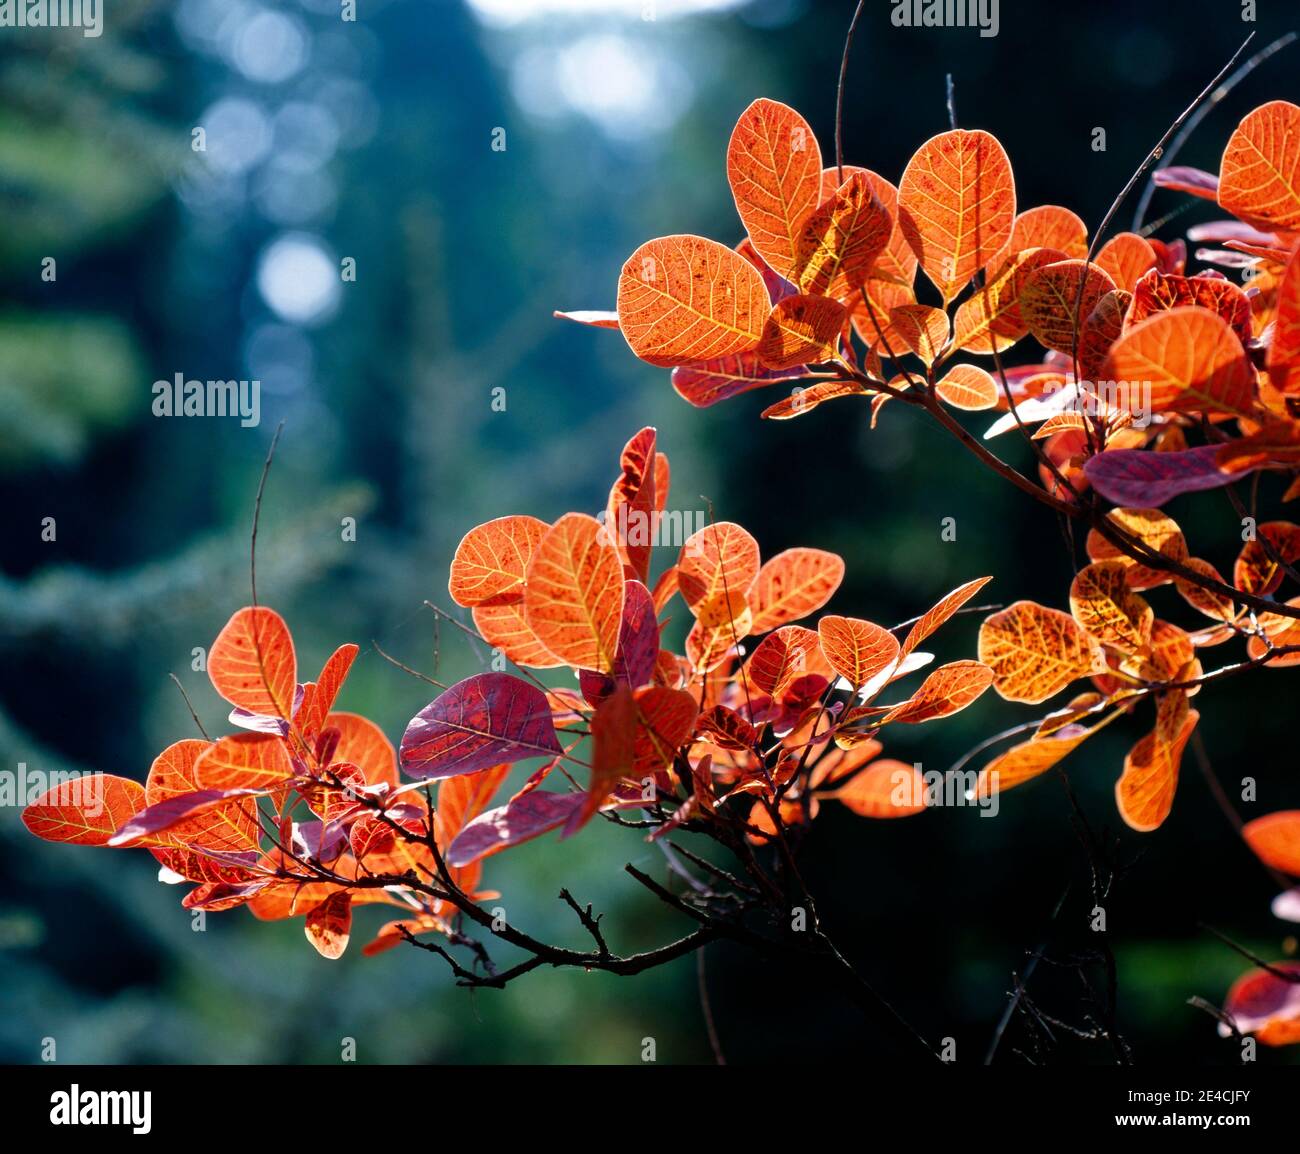 Pelucas en otoño con follaje rojo decorativo en el jardín, una madera ornamental decorativa Foto de stock